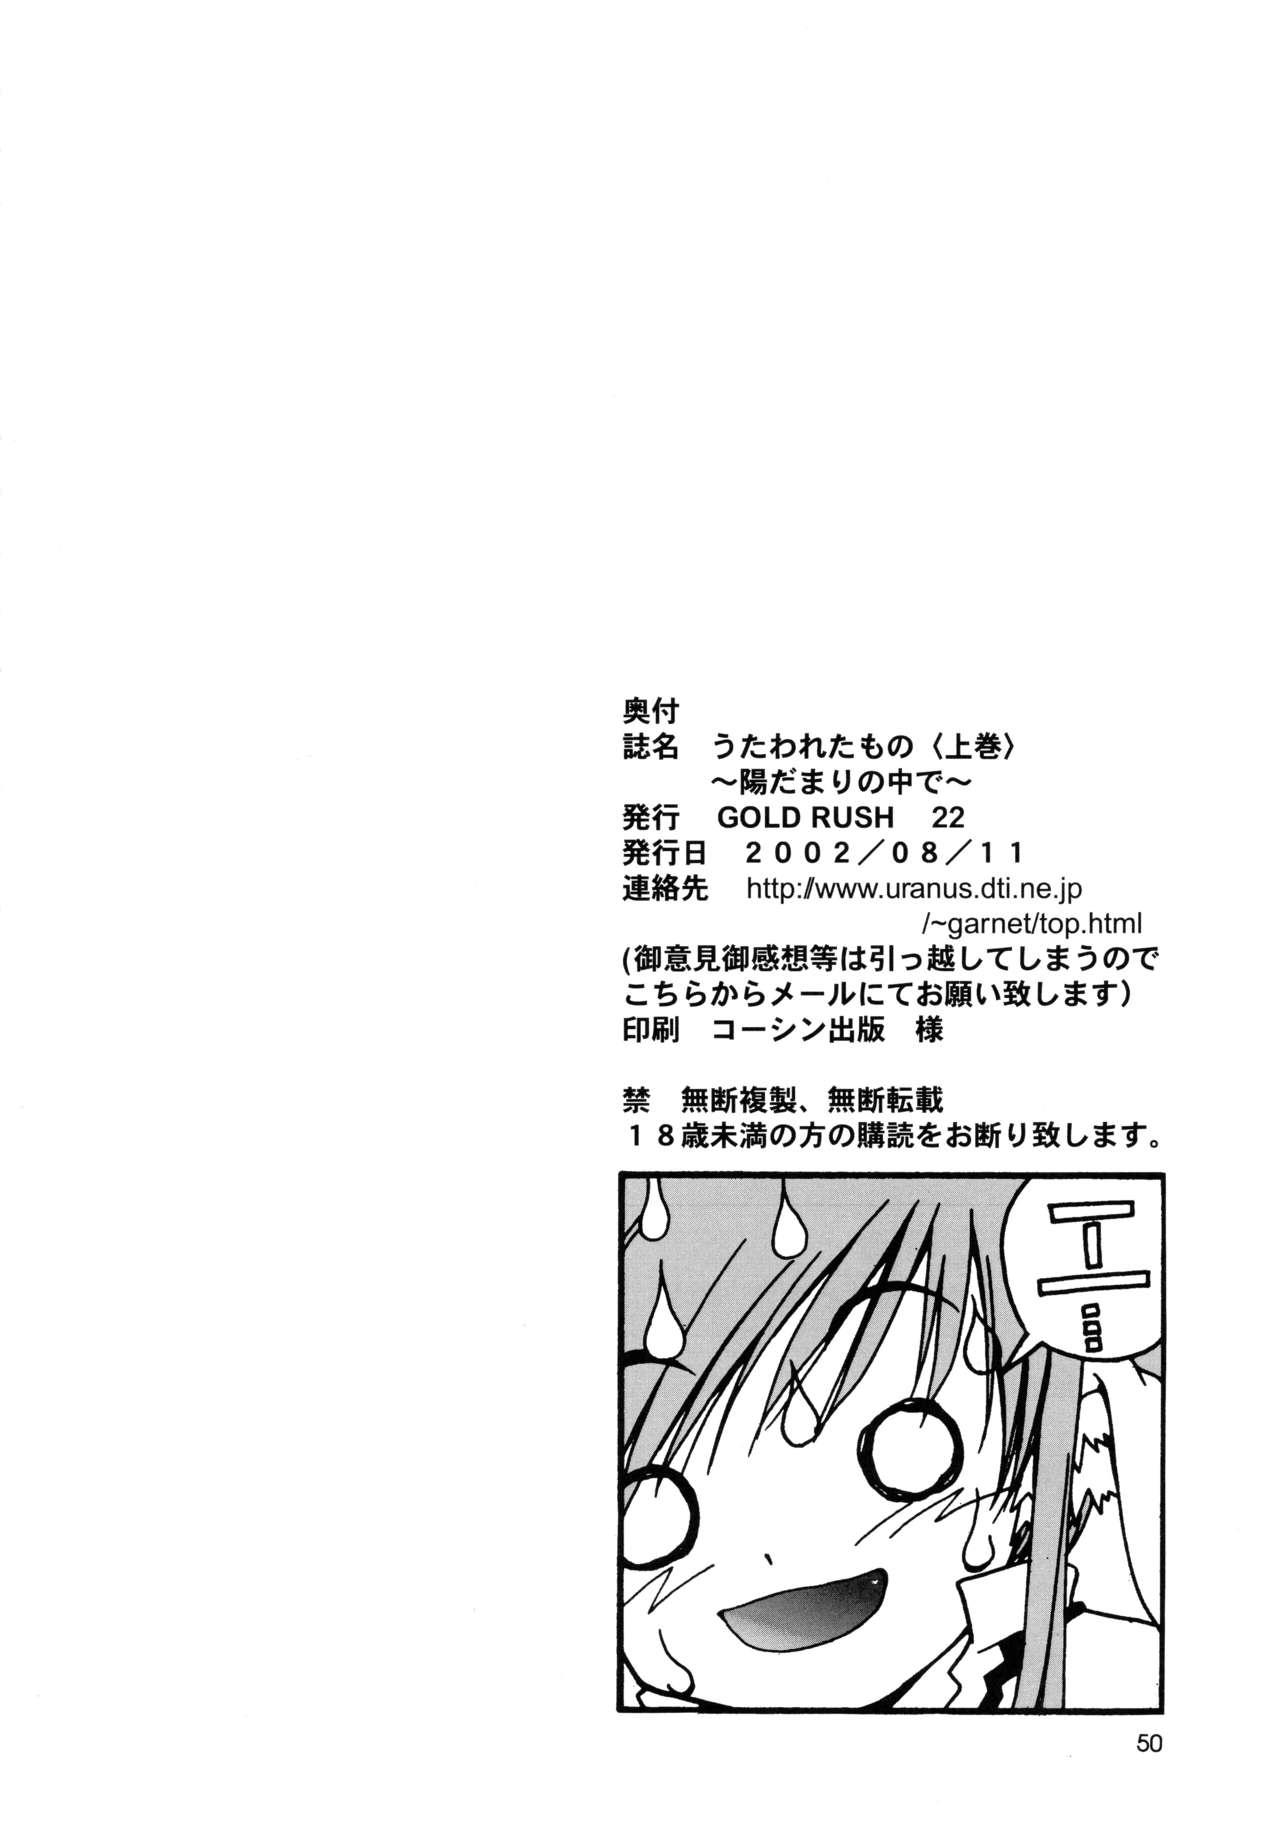 Flaca Utawaretamono <Joukan> - Utawarerumono Verga - Page 50